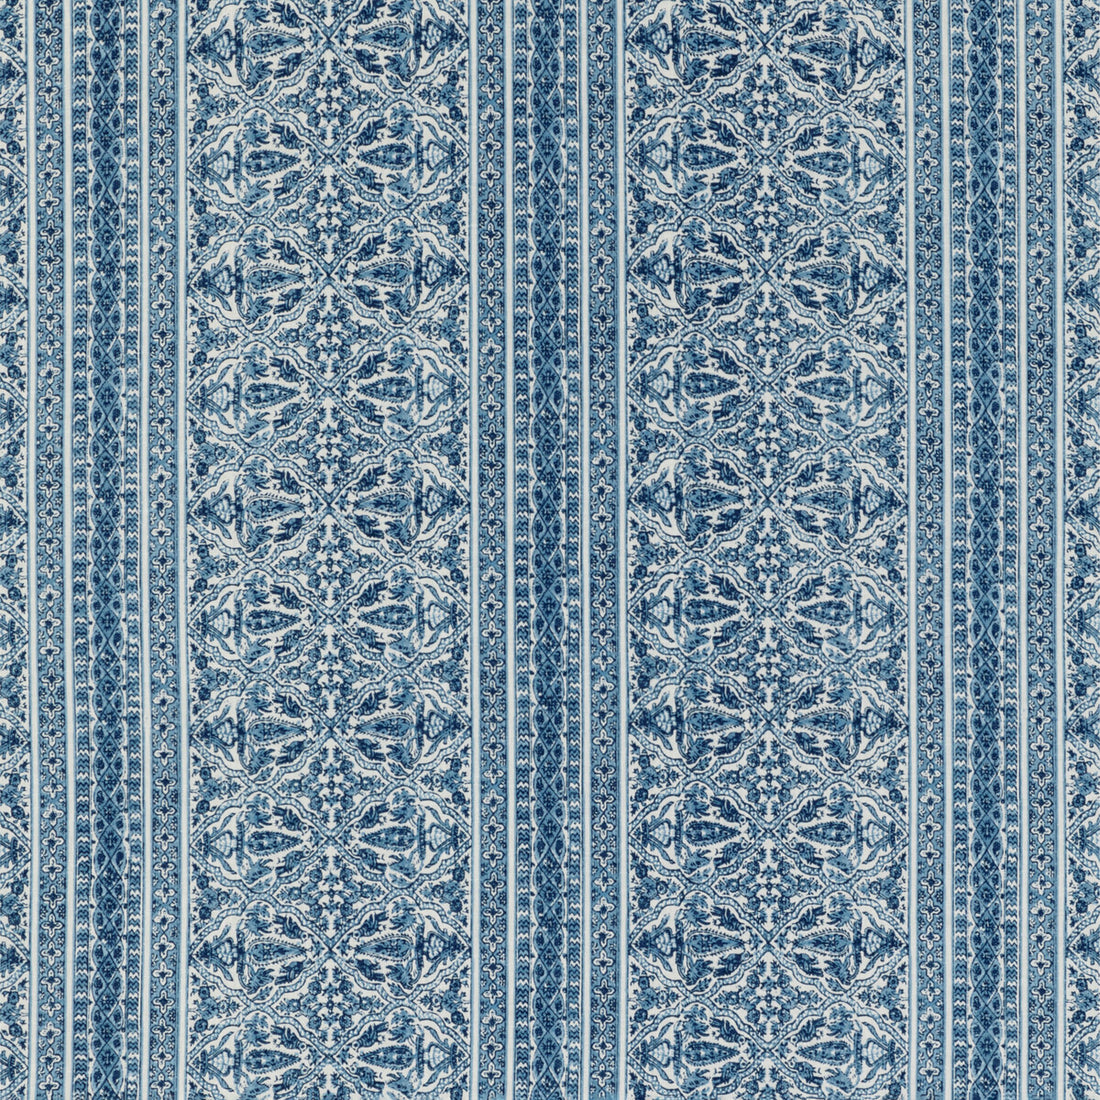 Kravet Basics fabric in mysore-50 color - pattern MYSORE.50.0 - by Kravet Basics in the L&